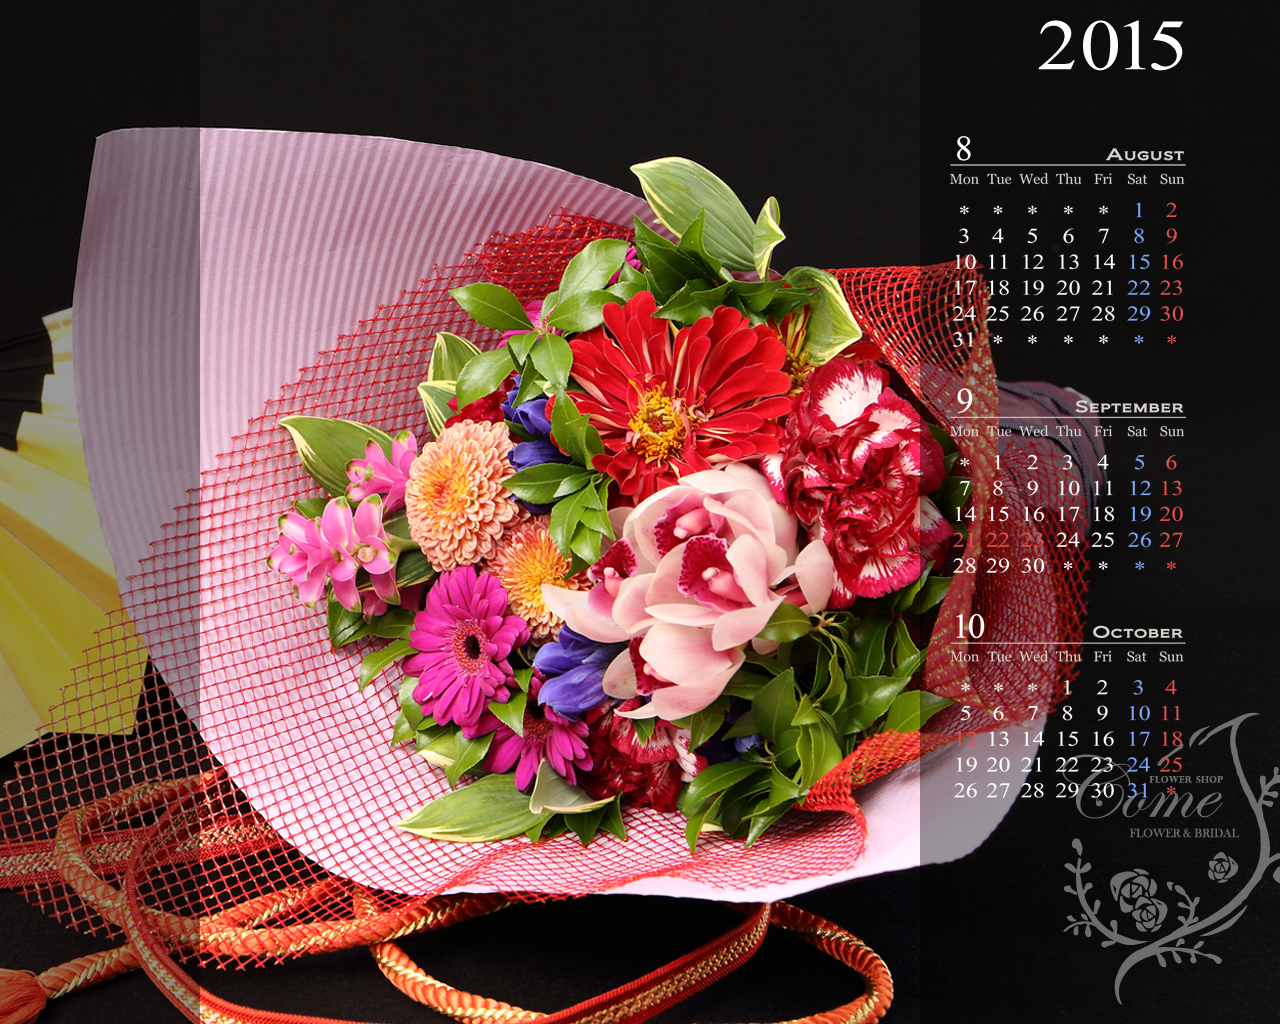 15年壁紙カレンダープレゼント 無料 花の写真を使った壁紙カレンダーを無料でダウンロード フラワーショップ花夢